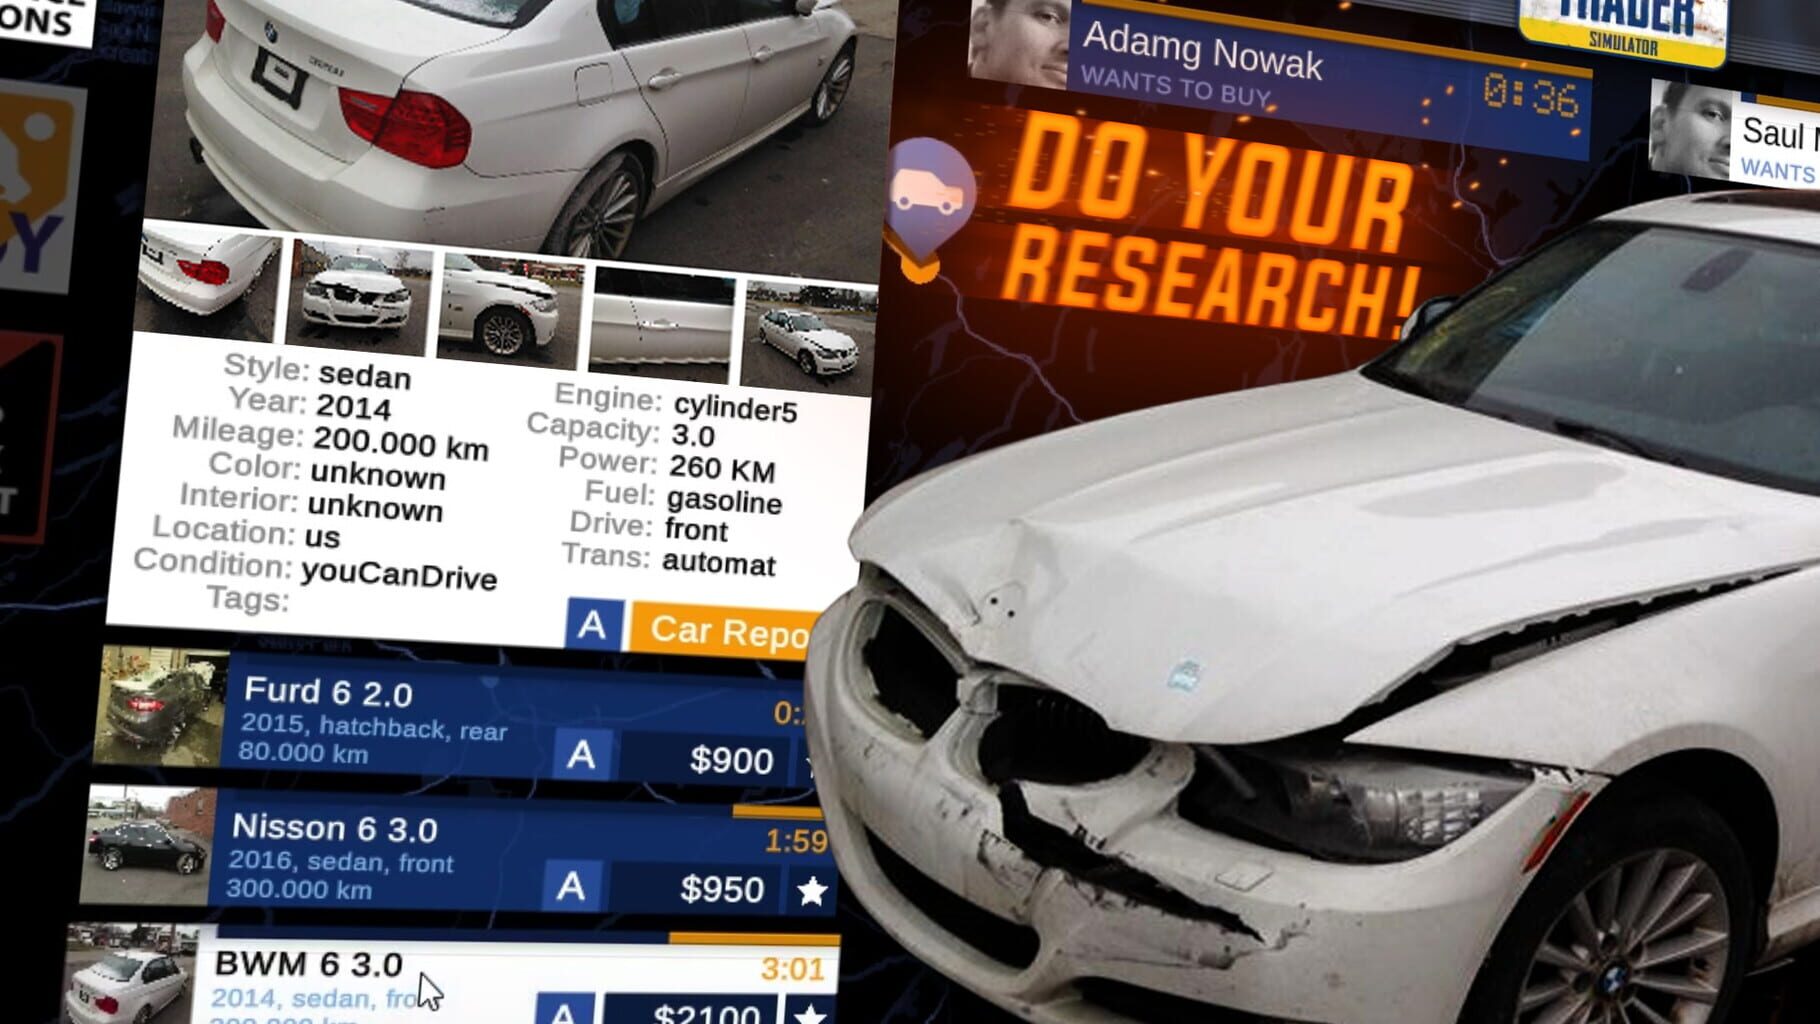 Car Trader Simulator screenshot